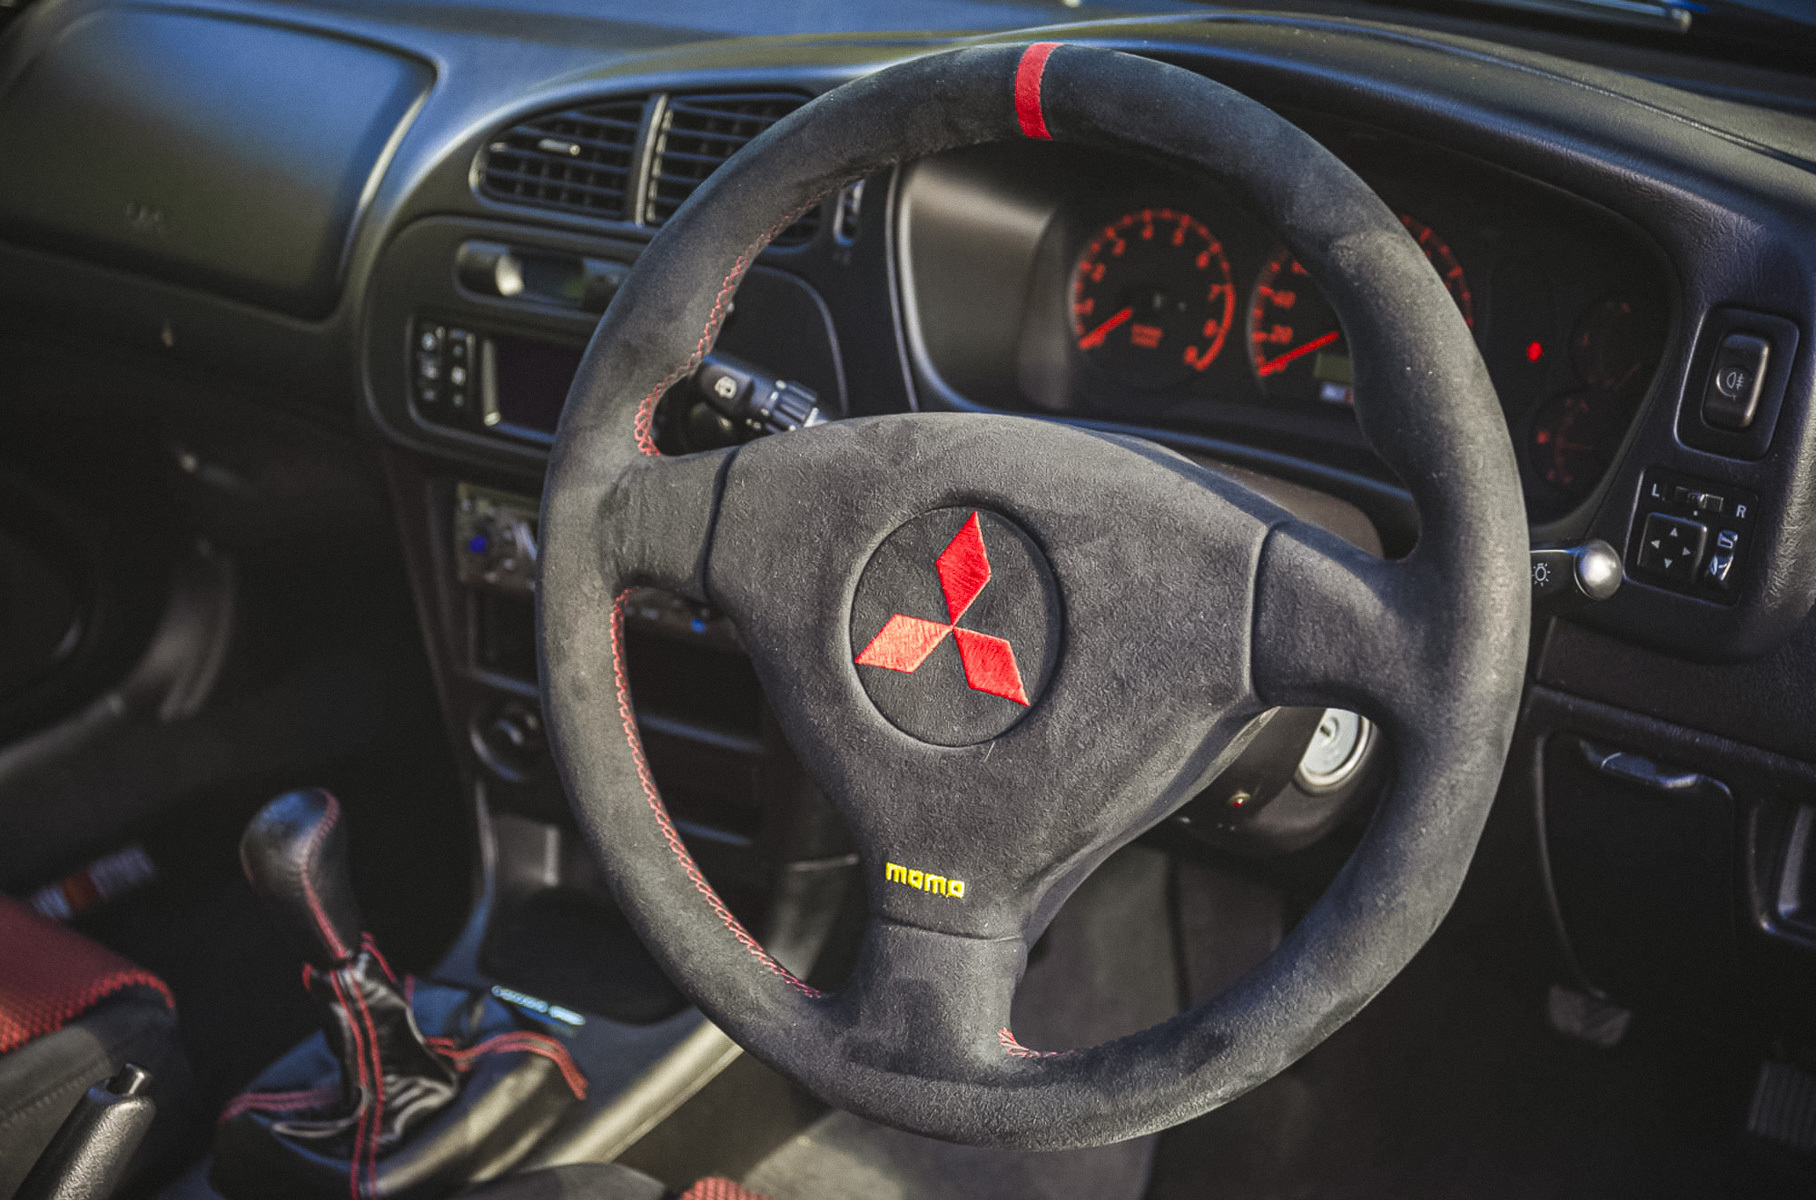 Mitsubishi Lancer Evolution Tommi Makinen Edition